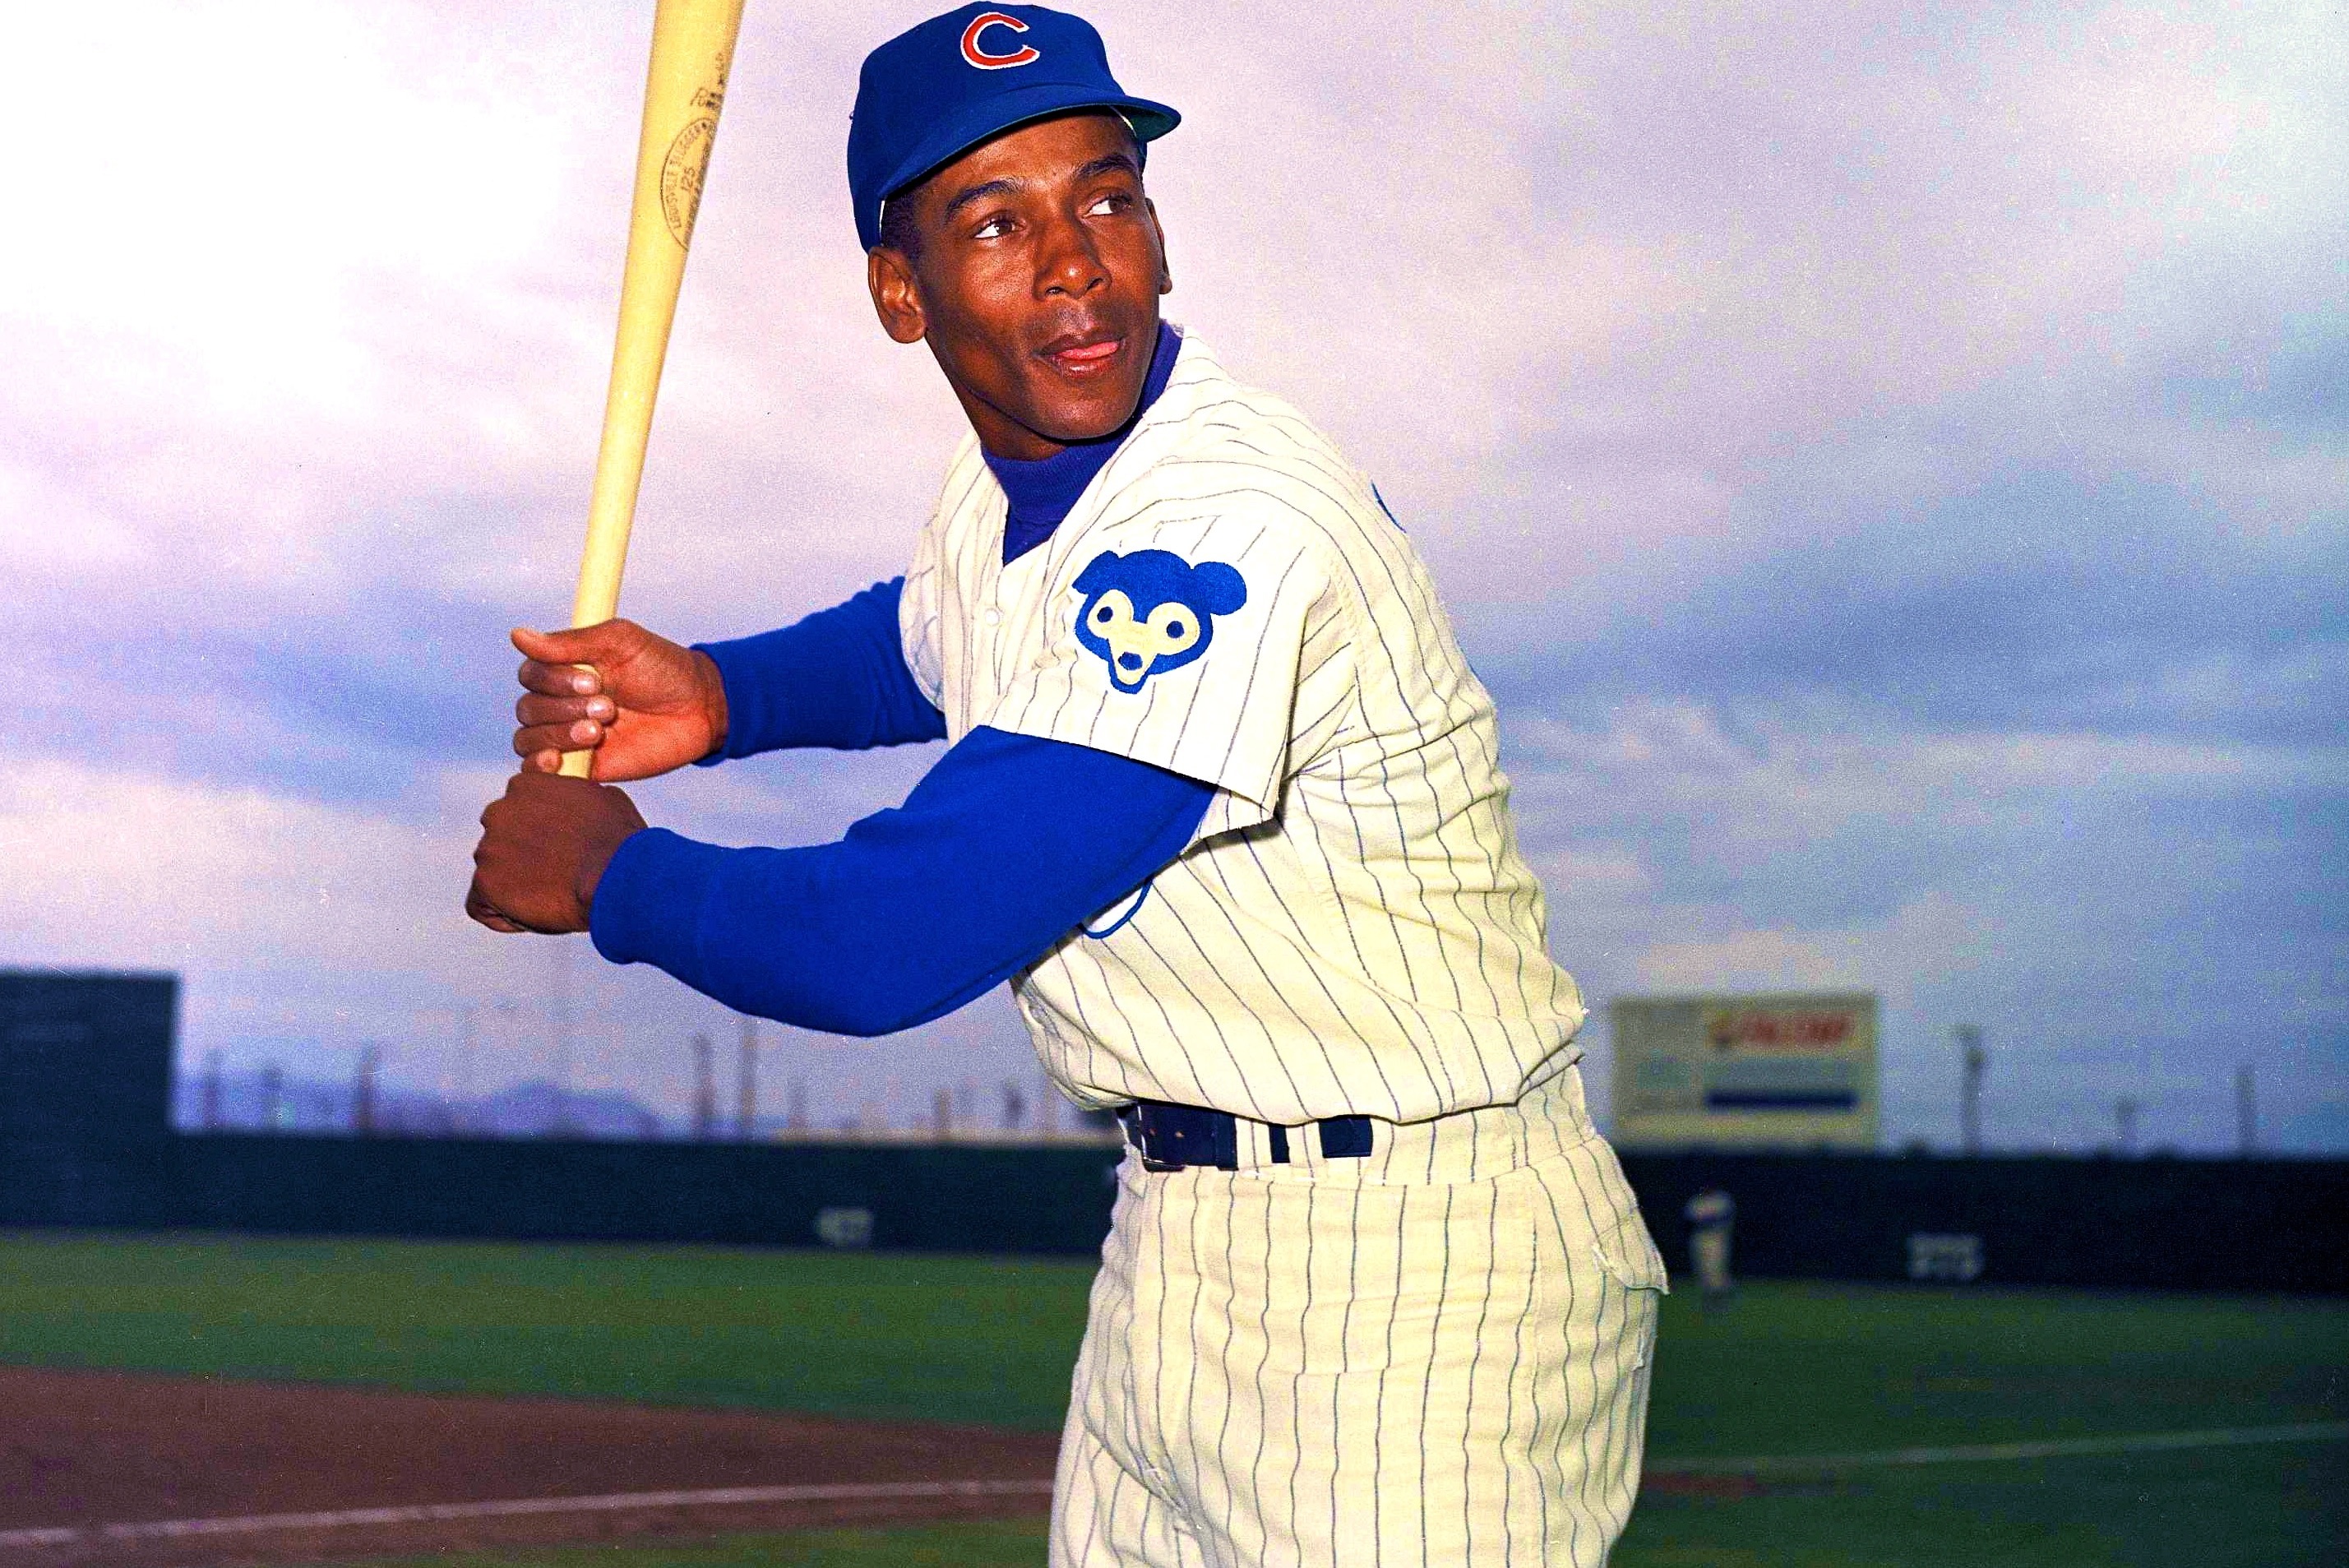 Cubs legend Ernie Banks a